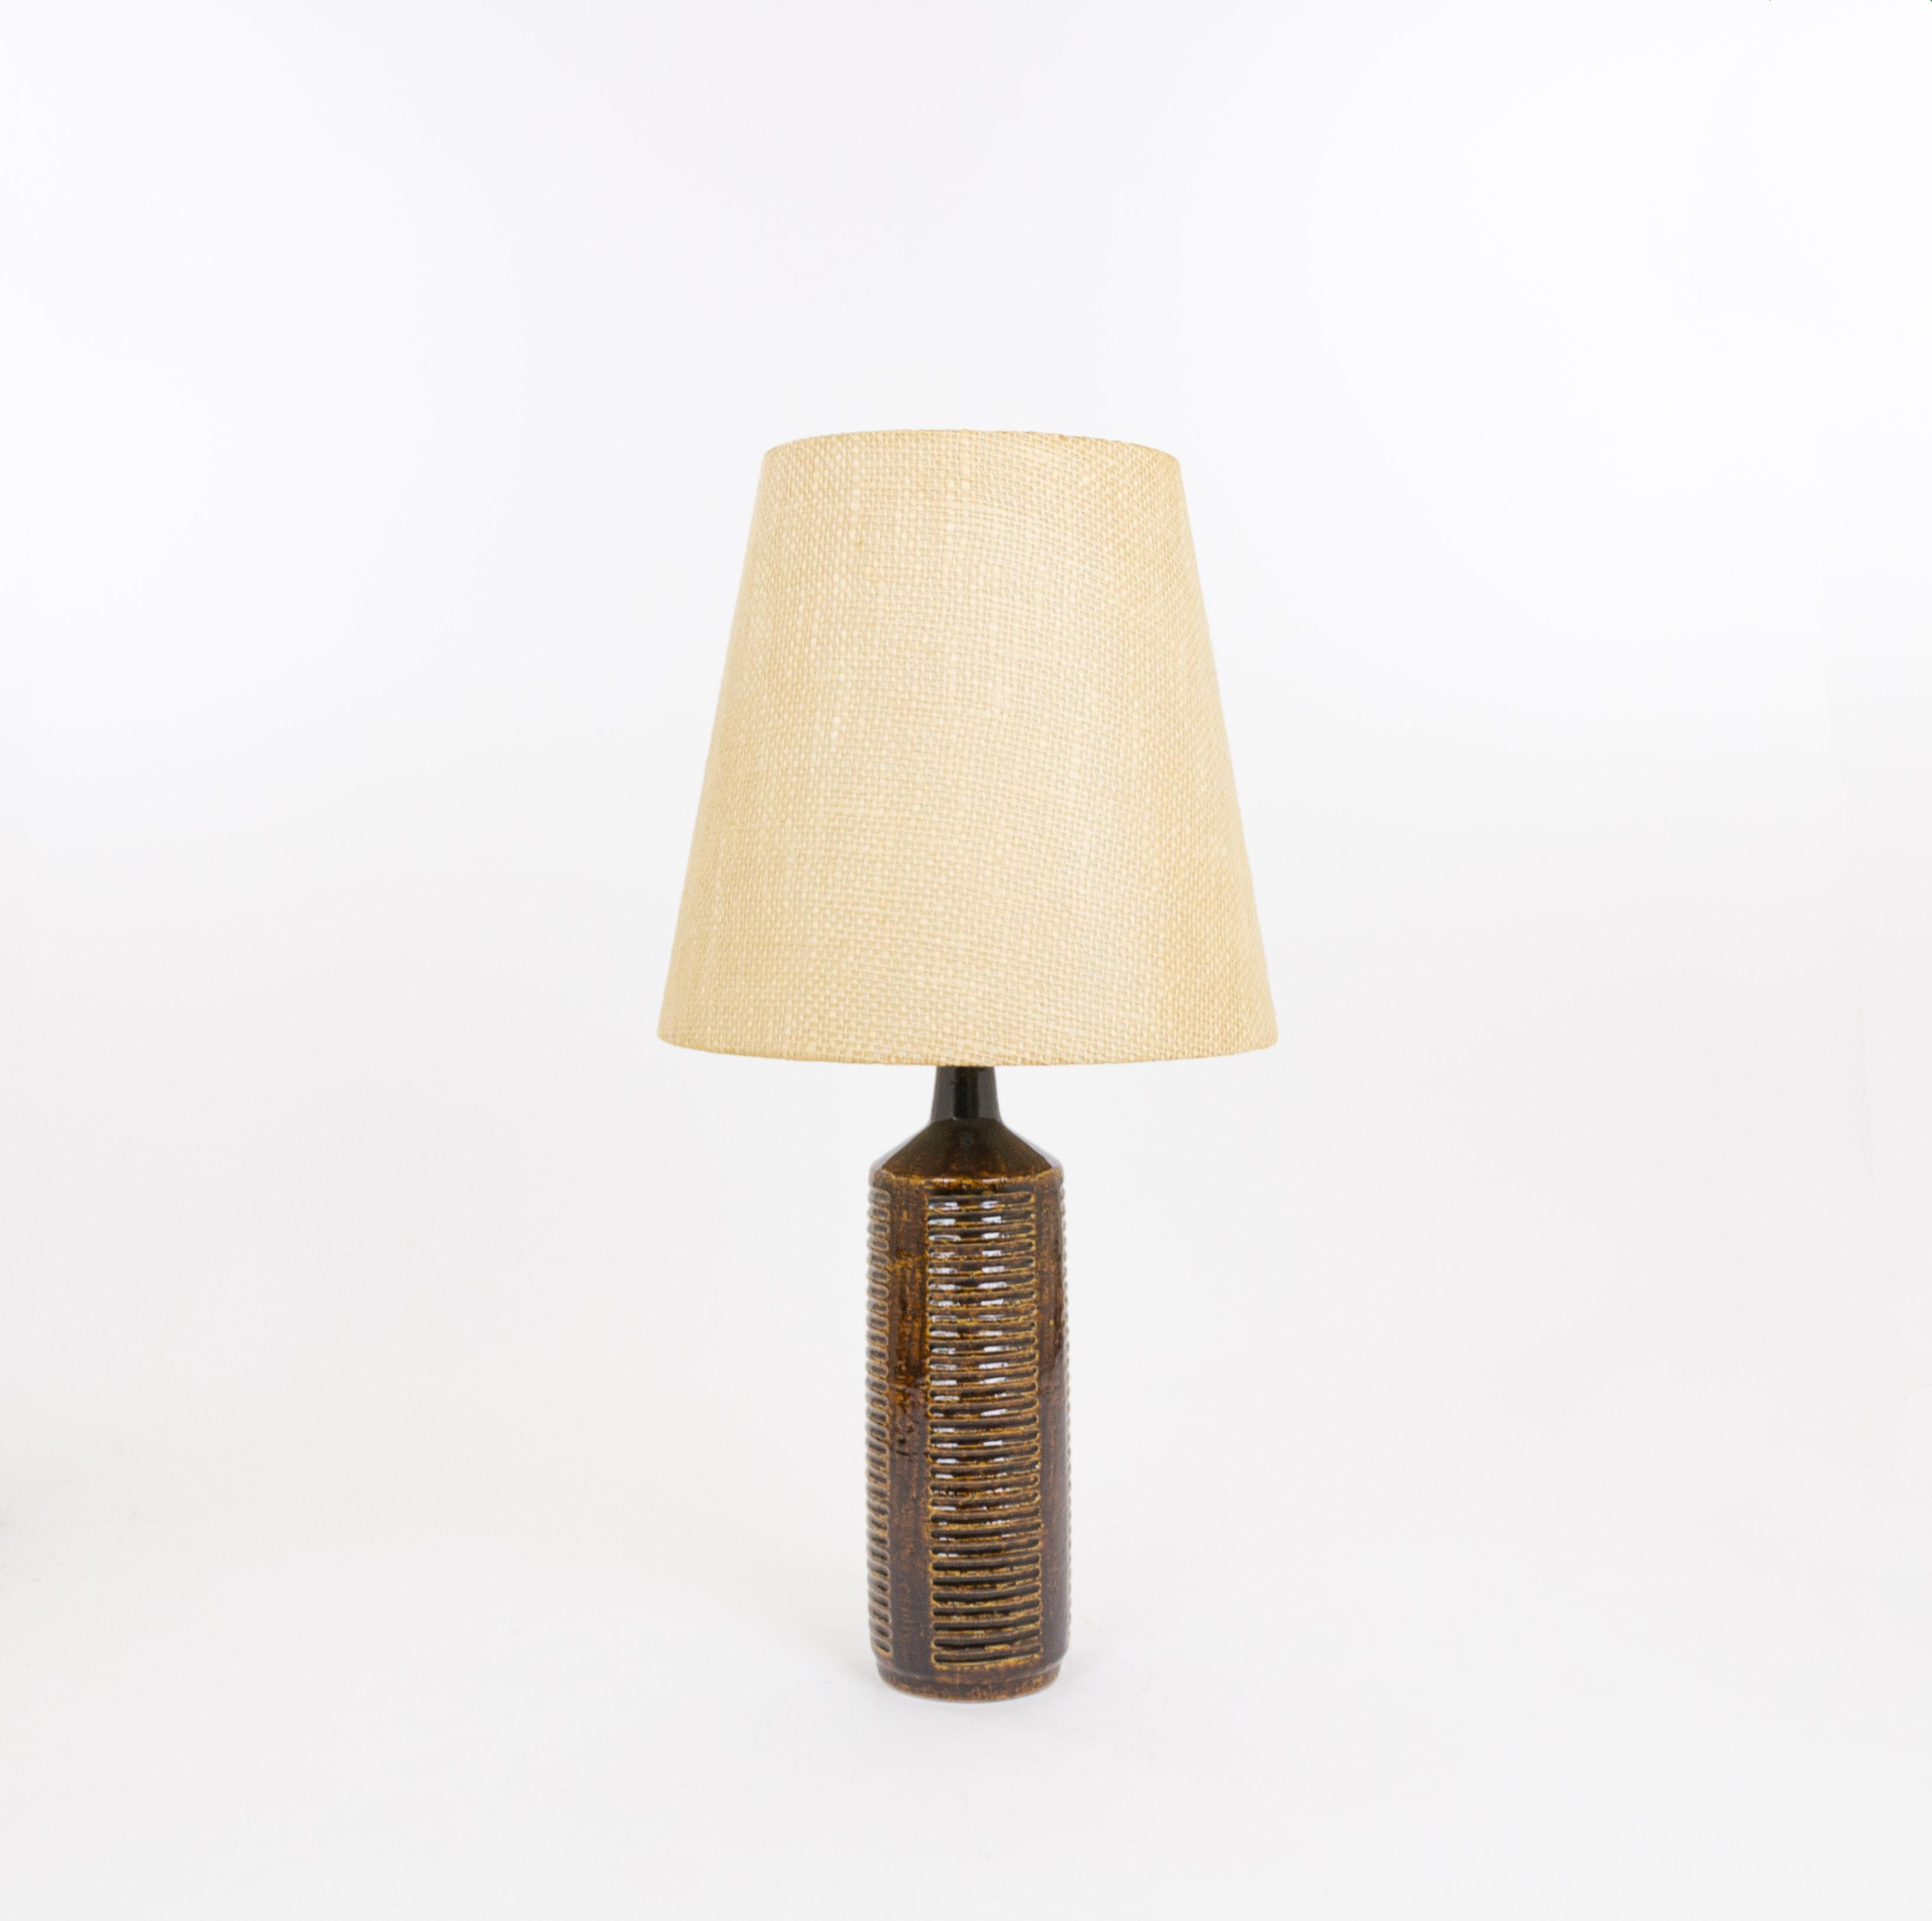 Lampe de table modèle DL/27 XL réalisée par Annelise et Per Linnemann-Schmidt pour Palshus dans les années 1960. La couleur de la base décorée à la main est brun chocolat foncé. Il présente des motifs impressionnés.

La lampe est livrée avec son